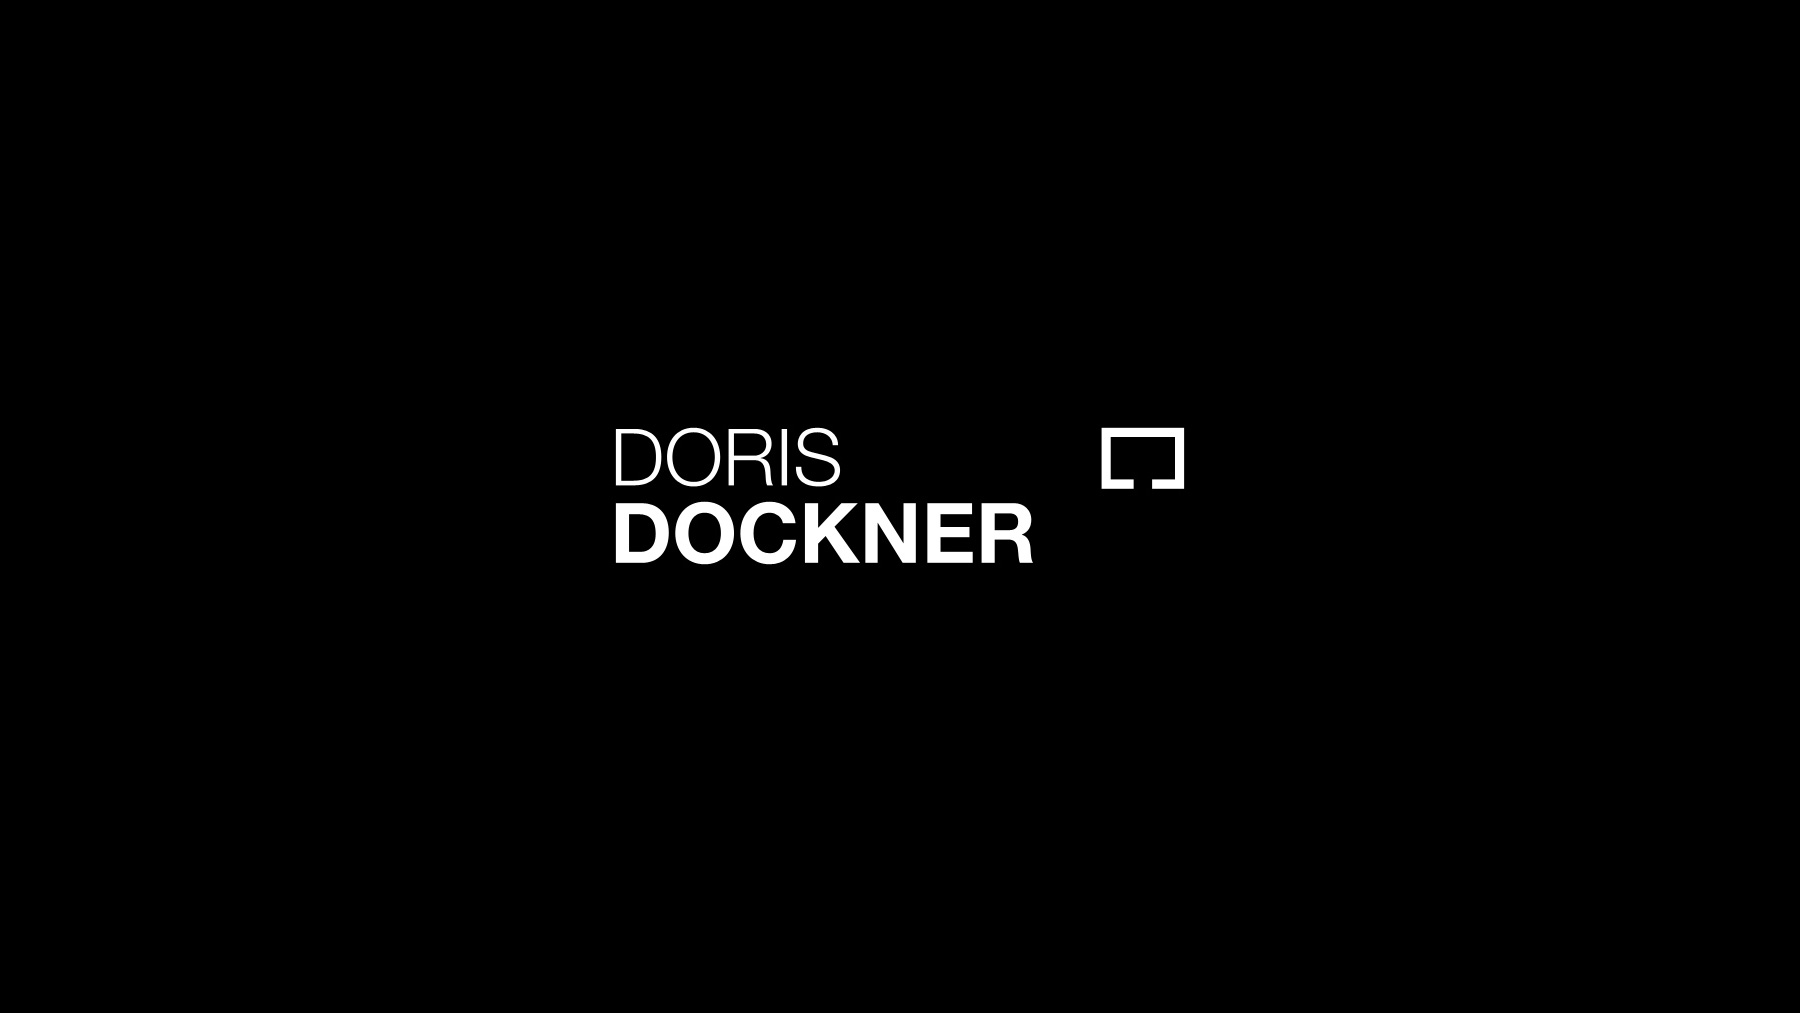 Doris Dockner